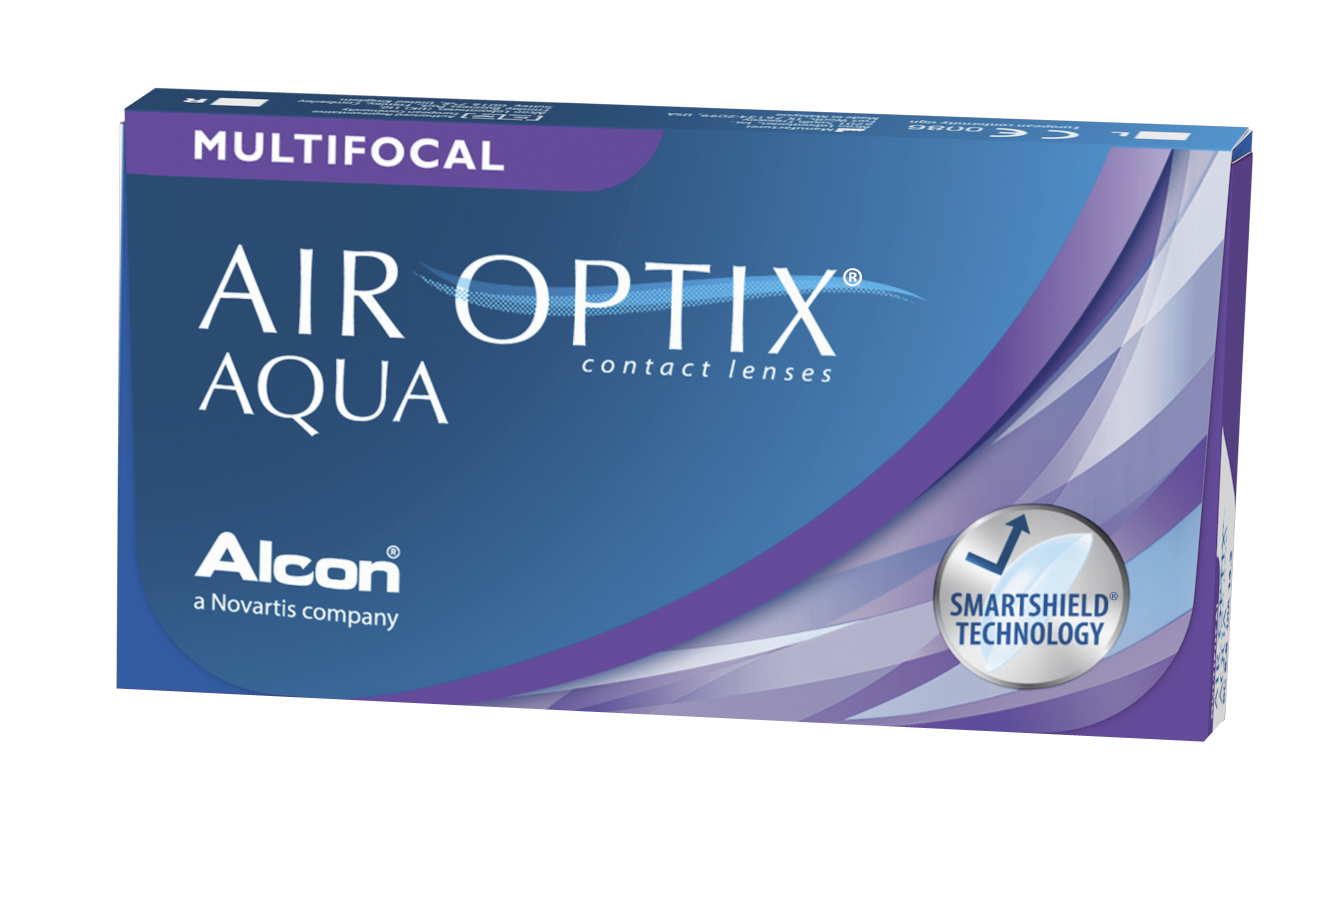 Air Optix Aqua Hydraglyde multifocal